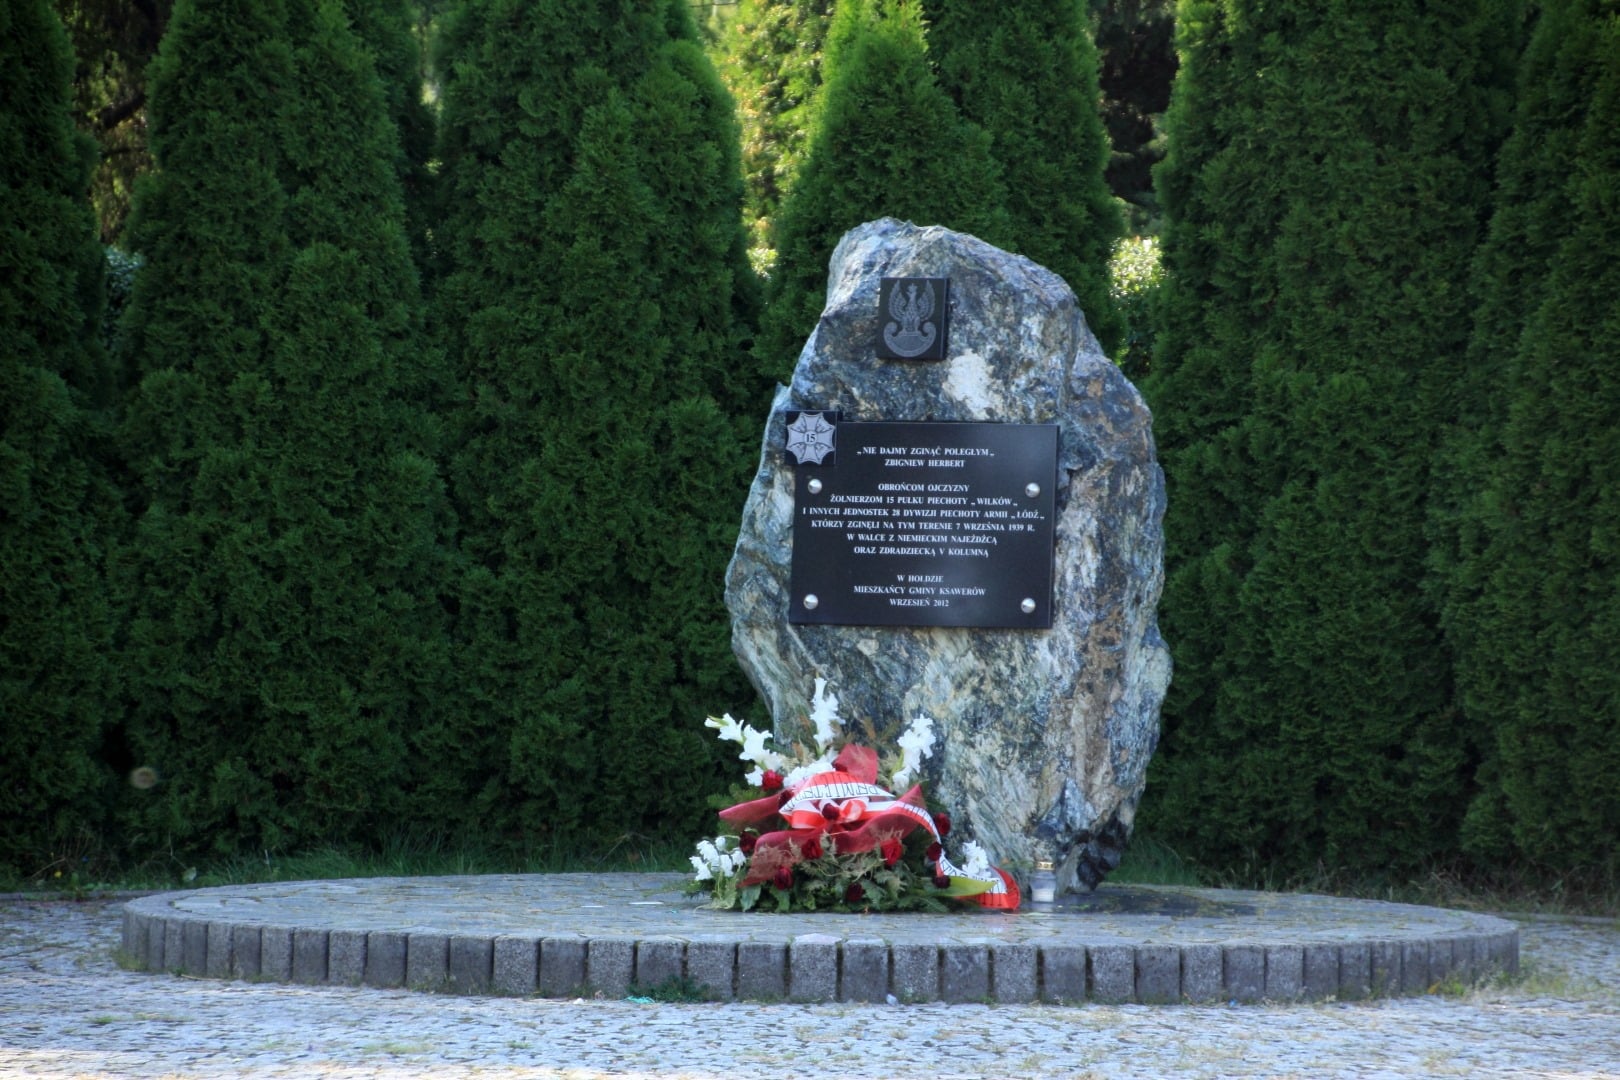 Zdjęcie przedstawia obelisk (kamień) przed którym znajduje się wieniec biało czerwonych kwiatów